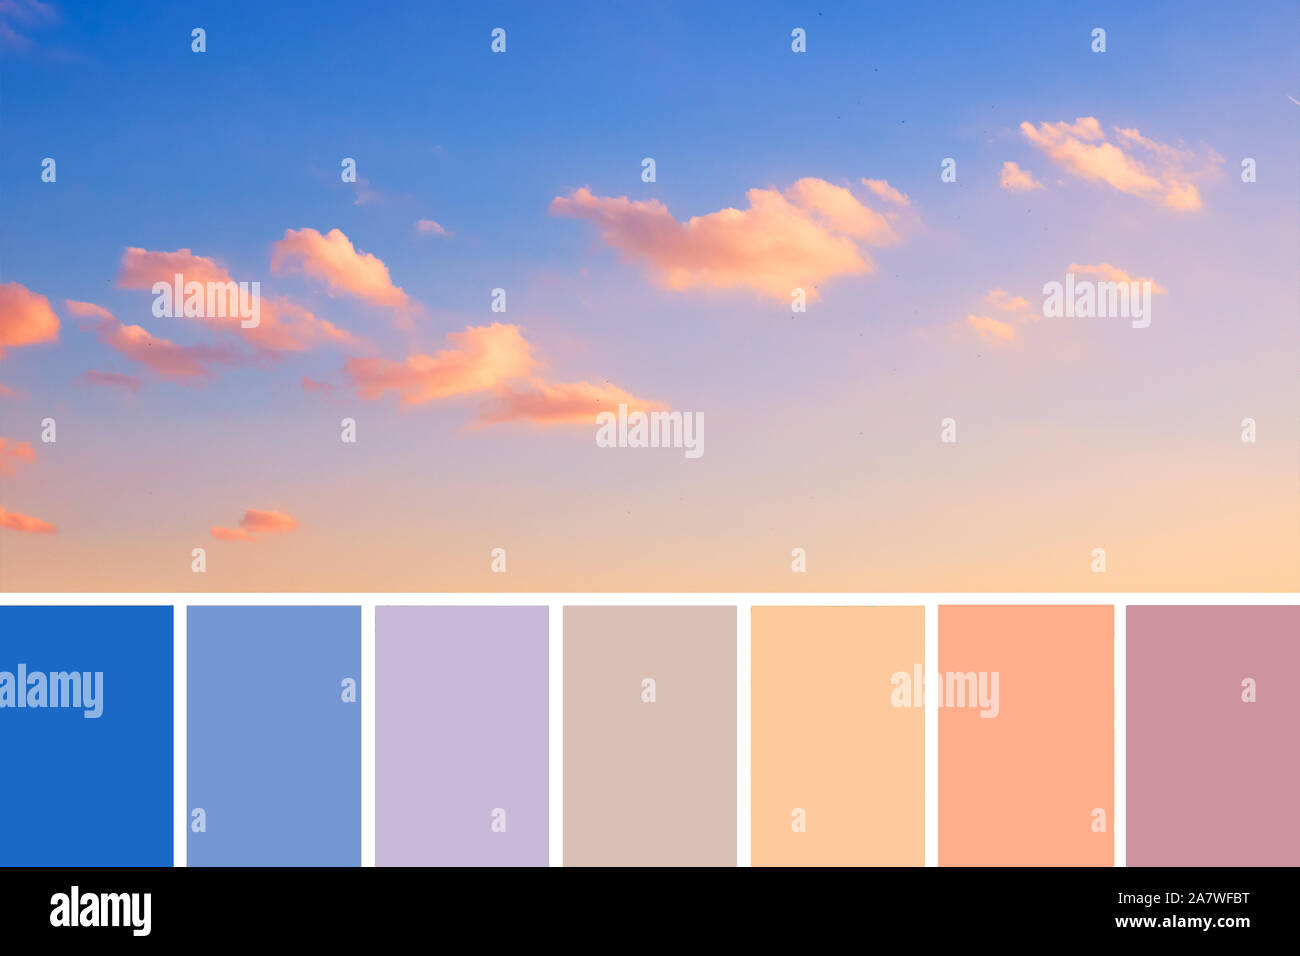 Corrispondenza colore tavolozza da immagine panoramica di romantico tramonto colorato di rosa e arancio soffici nuvole sul blu e viola sky, naturale colo Foto Stock